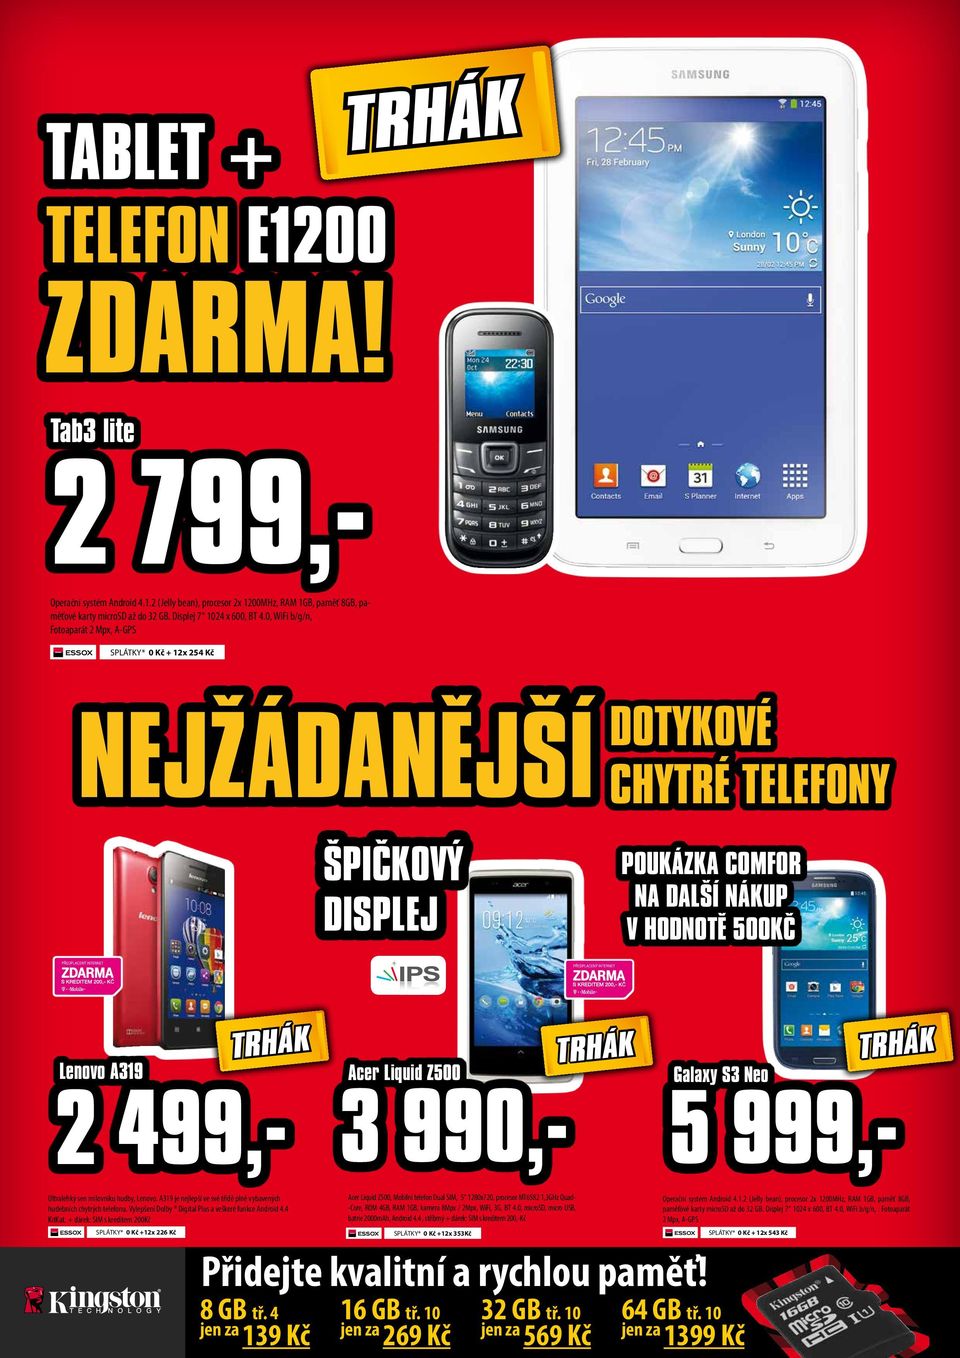 Z500 3 990,- Galaxy S3 Neo 5 999,- Ultralehký sen milovníku hudby, Lenovo. A319 je nejlepší ve své třídě plně vybavených hudebních chytrých telefonu.